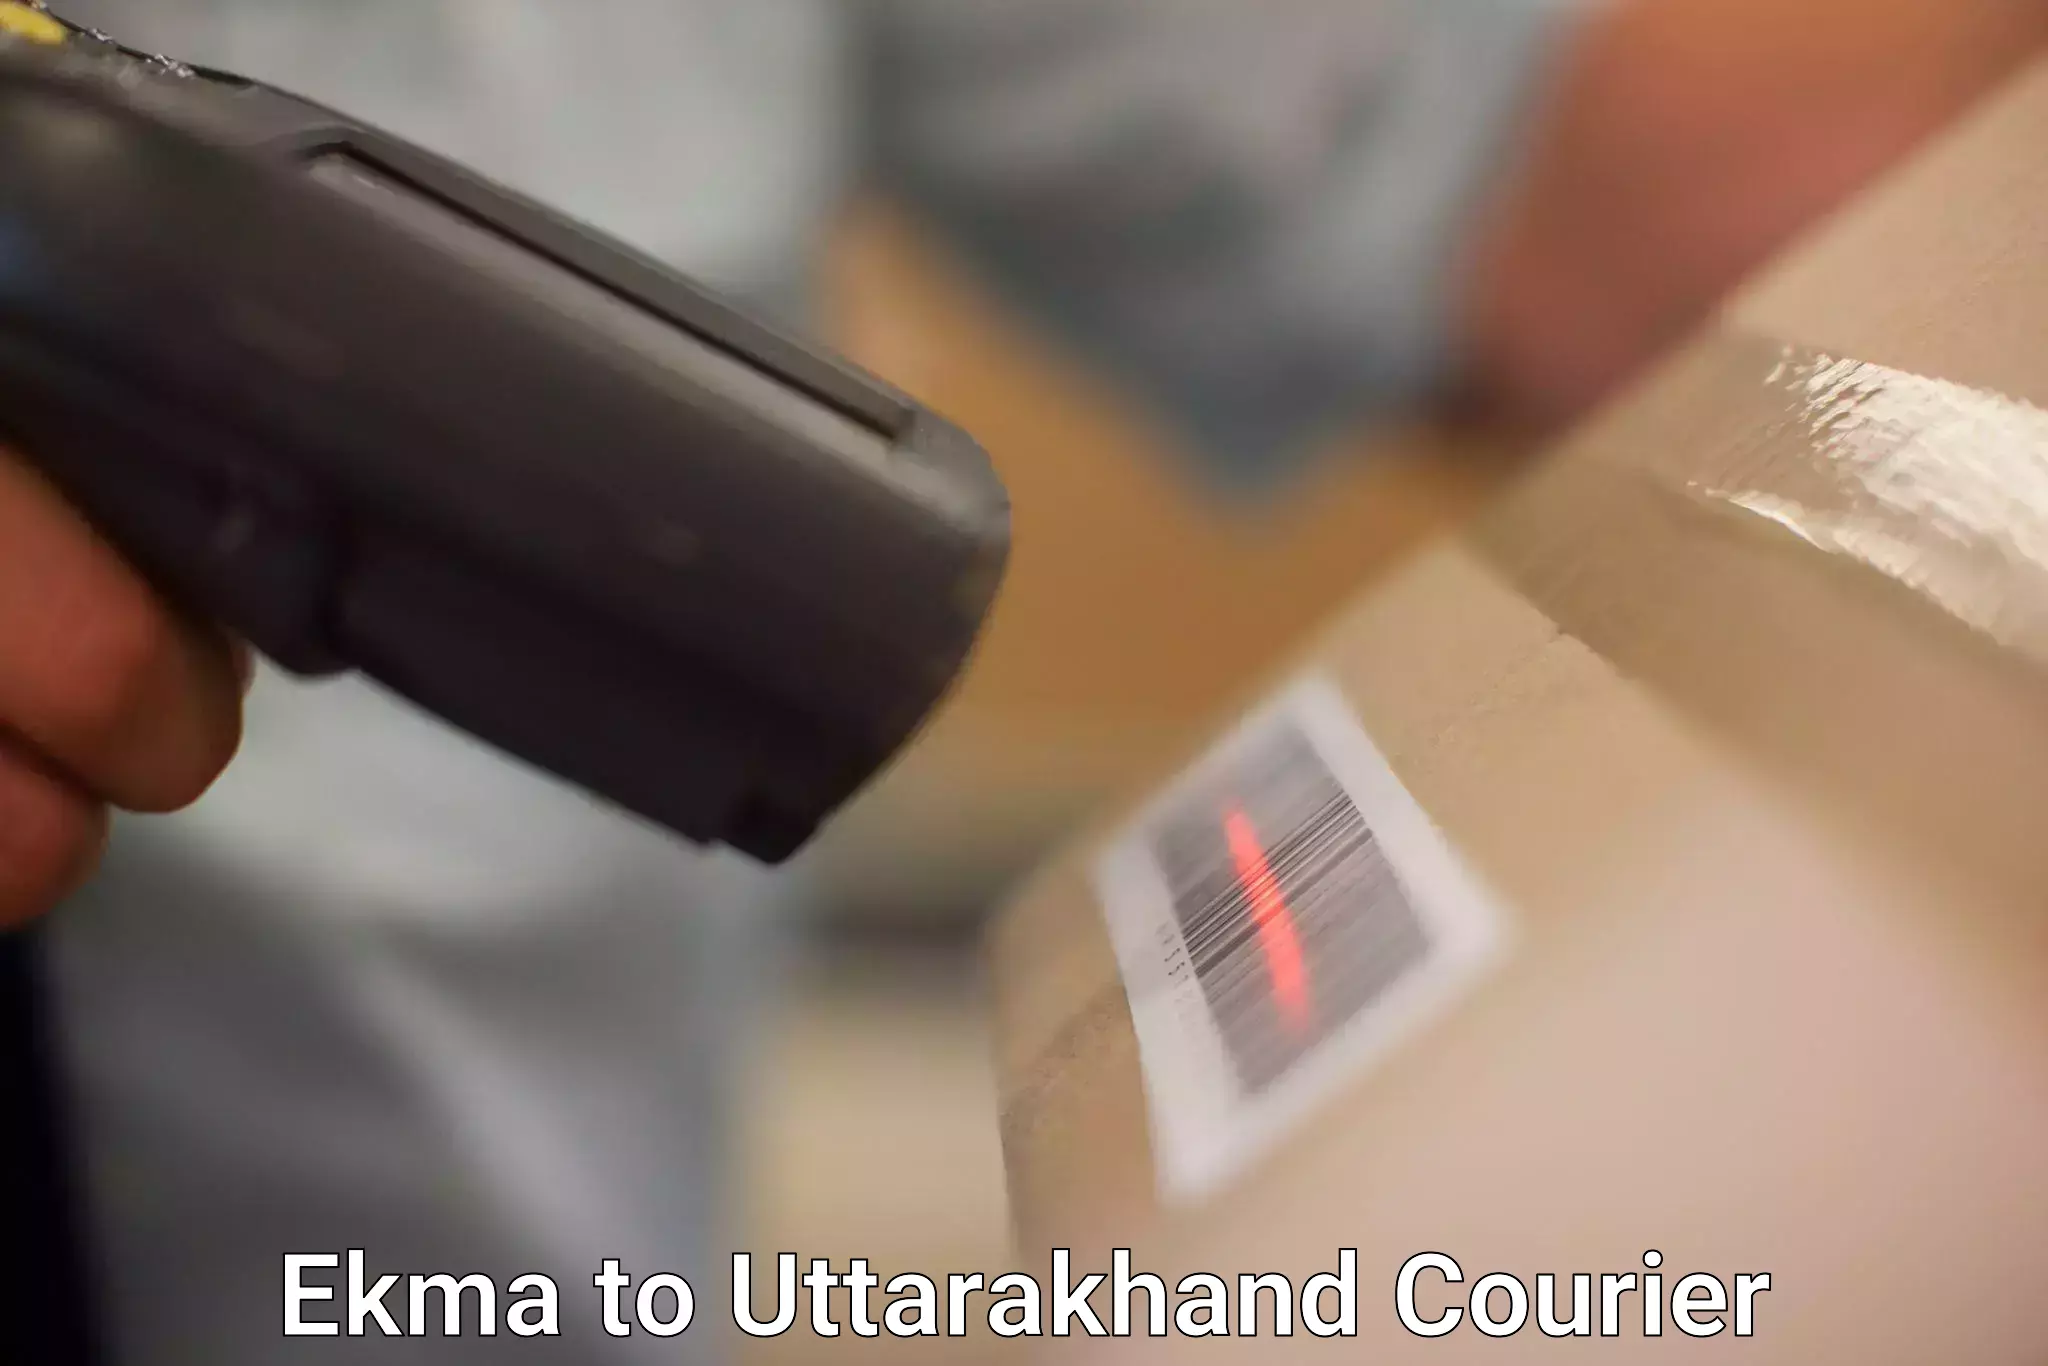 Urgent courier needs Ekma to Uttarakhand